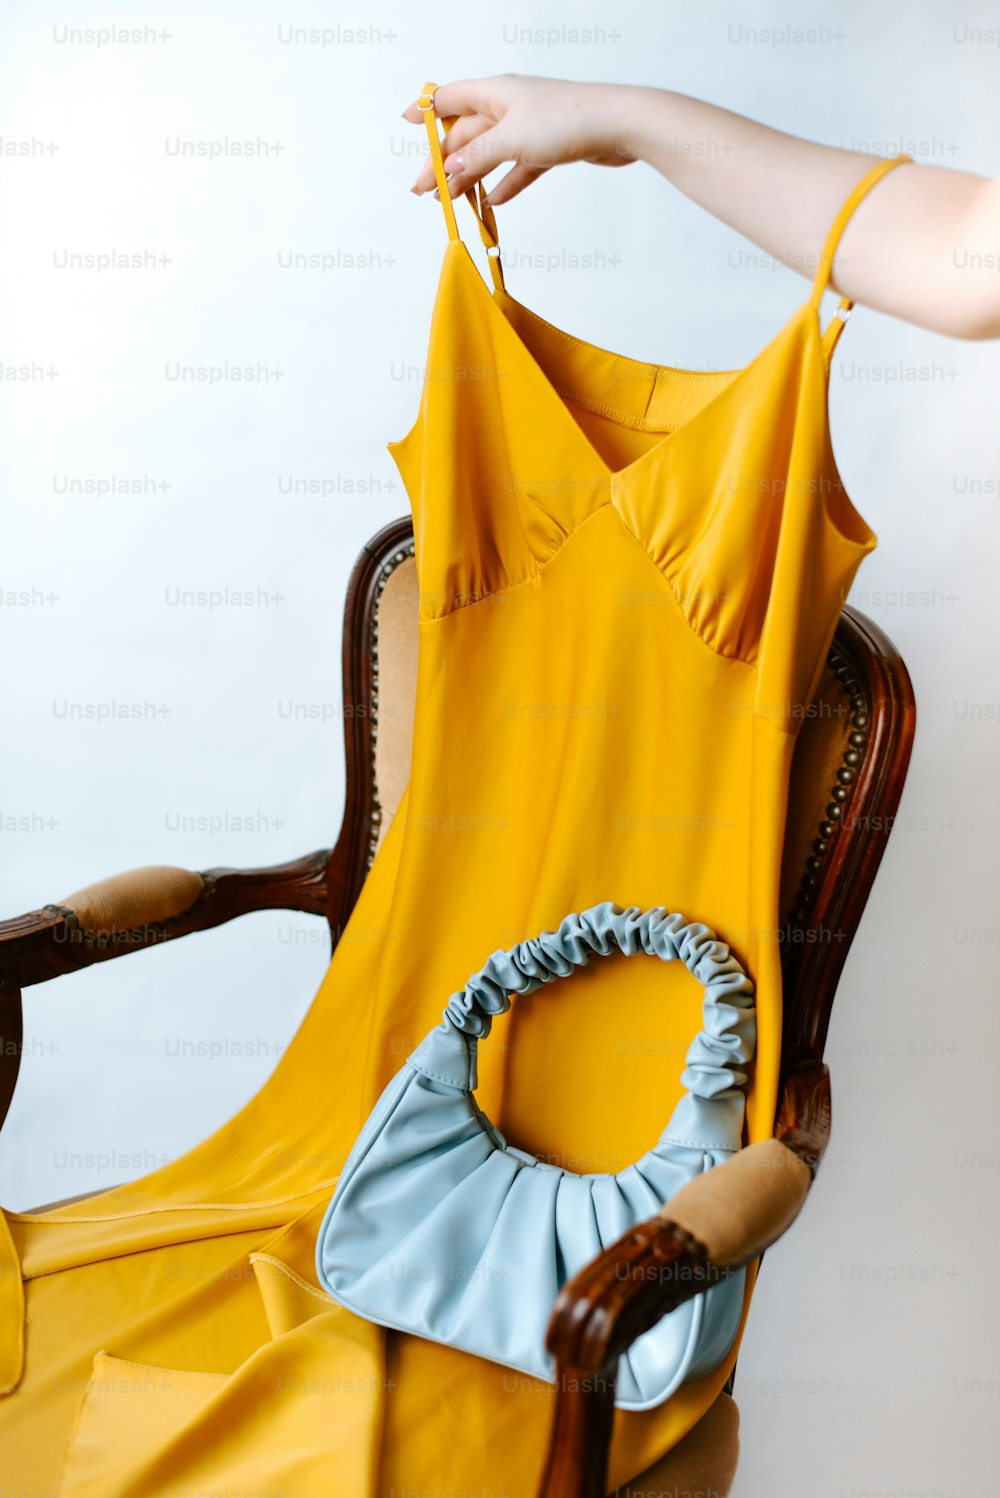 Eine Frau hält ein gelbes Kleid auf einem Stuhl